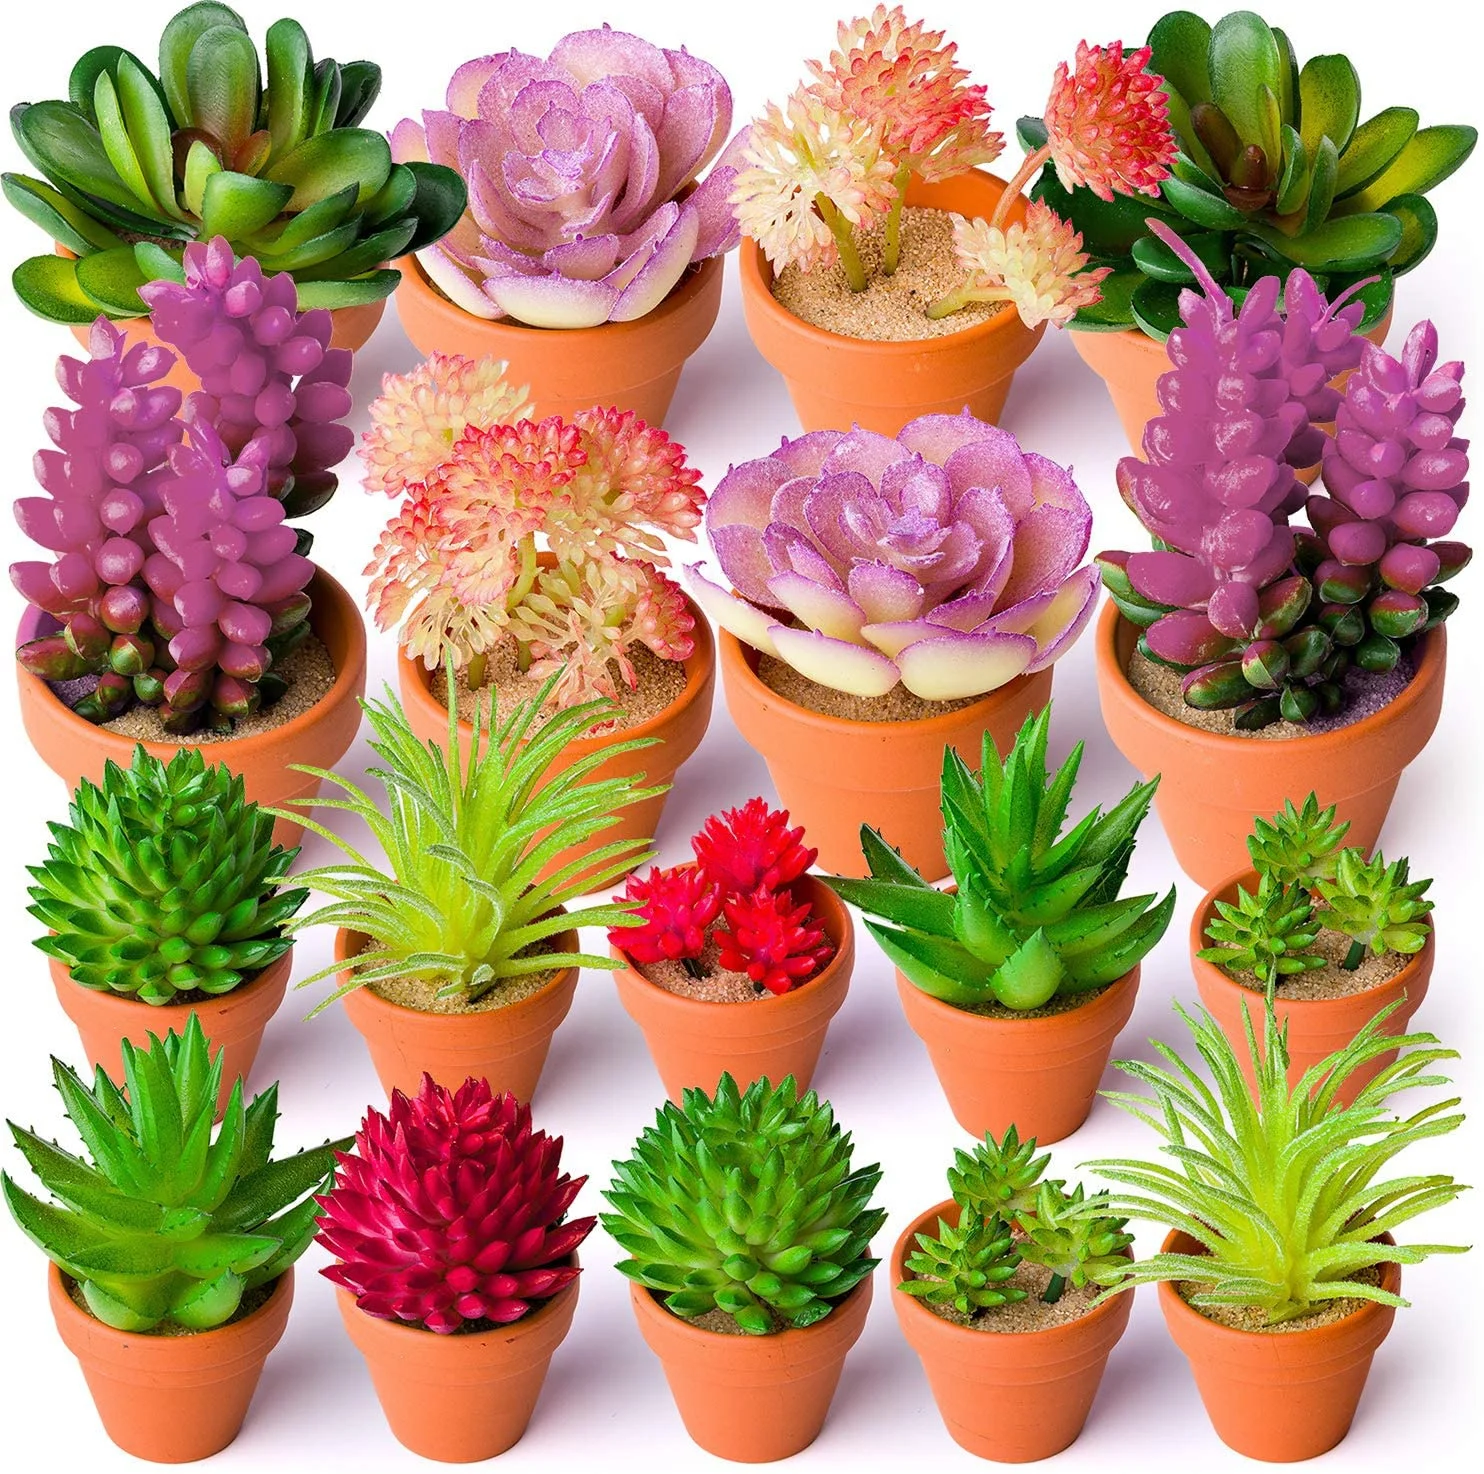 24pcs Artificial Succulent Plants Unpotted Picks Realistic Plastic Cactus Stems for Terrarium Bulk Faux Assorted Arrangements